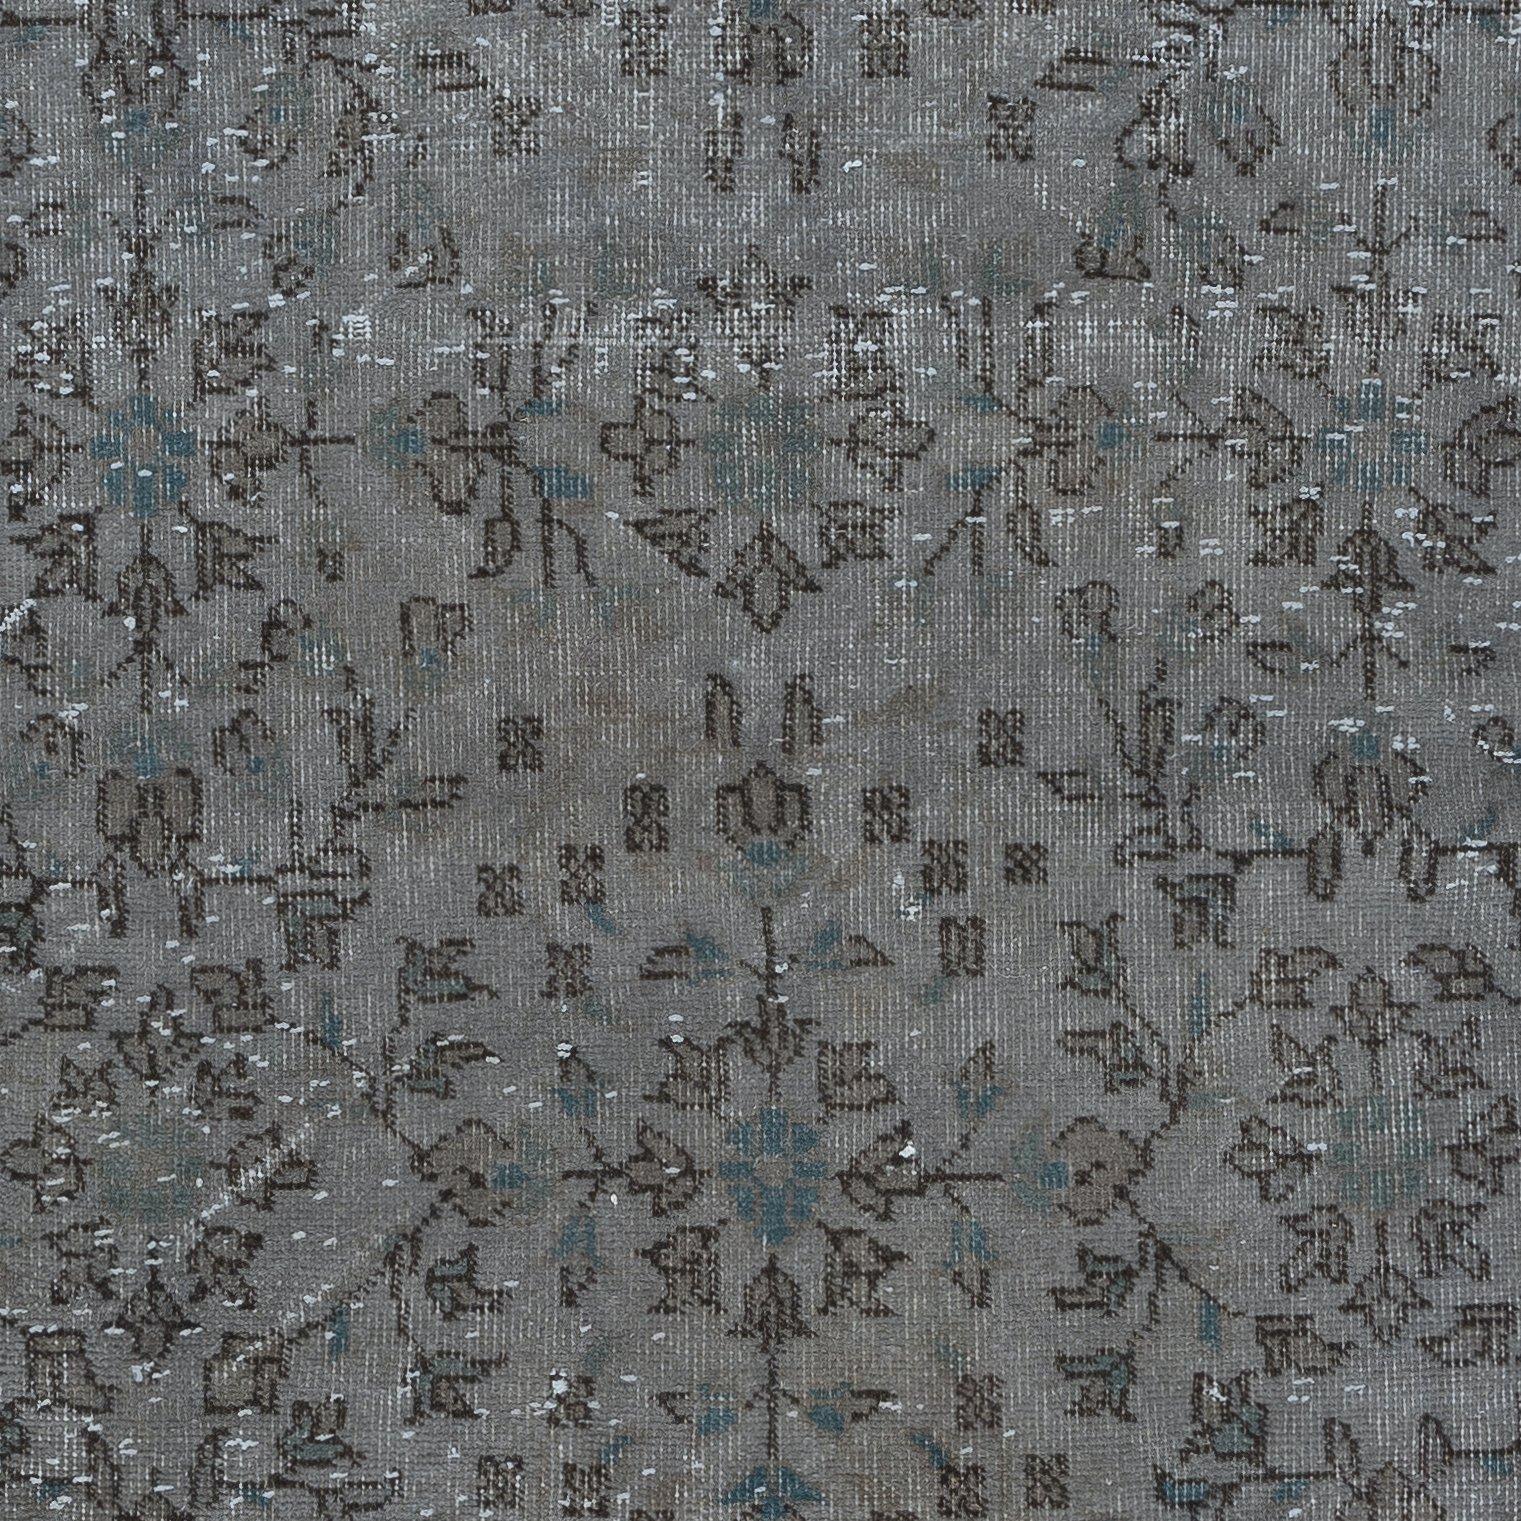 3.5x6.3 Ft Contemporary Turkish Handmade Rug mit Teal Blue Details & Grey Field (Handgewebt) im Angebot